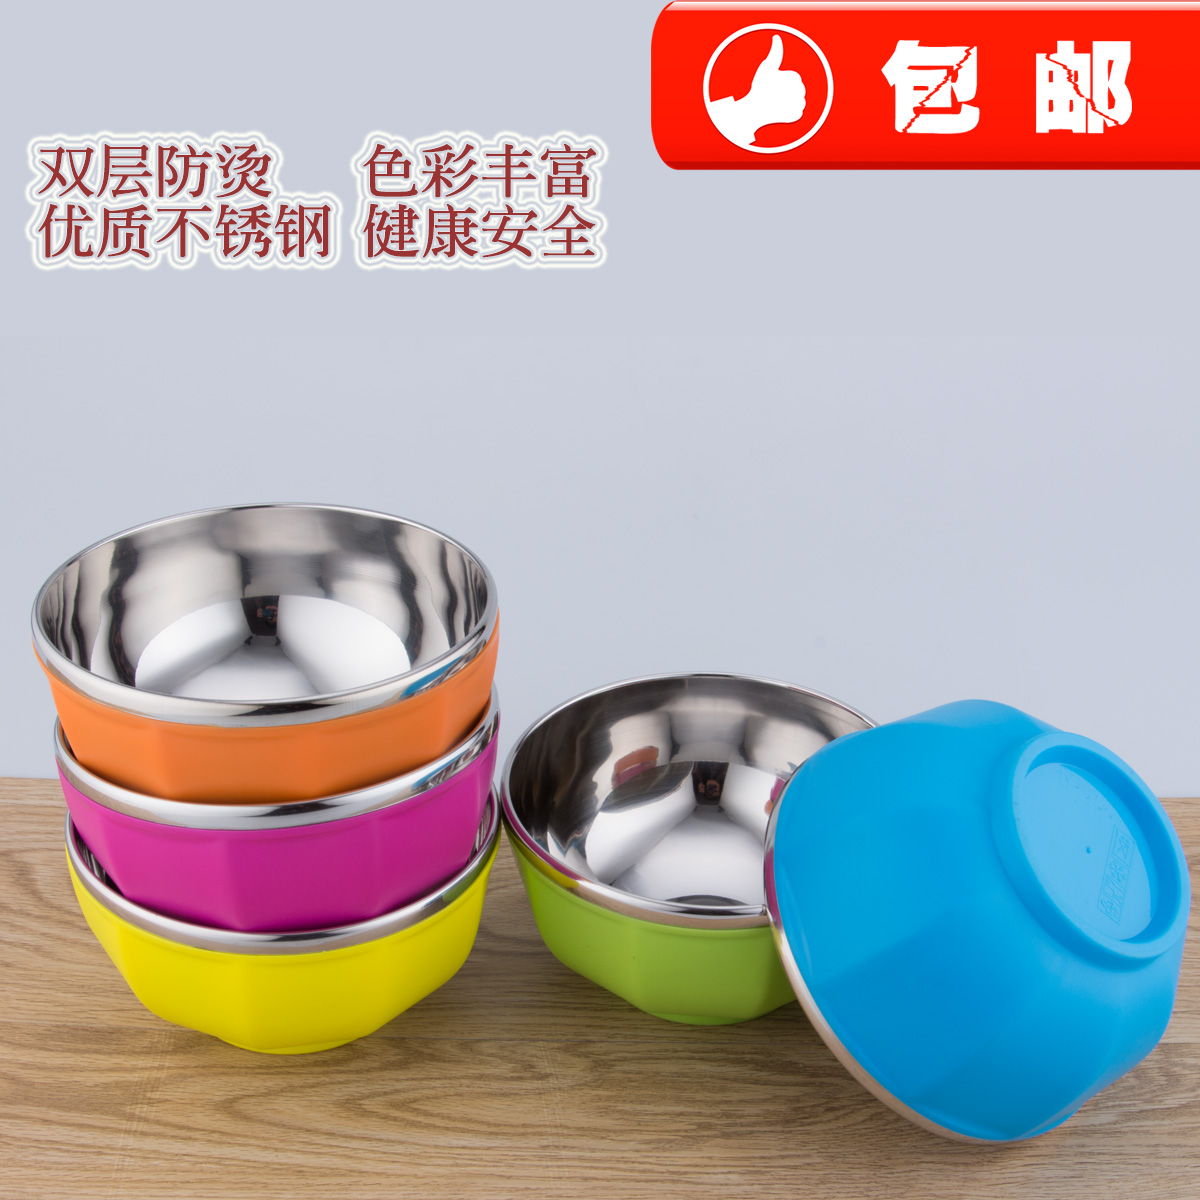 批发不锈钢塑料彩色碗韩式可爱创意米饭碗双层隔热防烫儿童碗汤碗折扣优惠信息